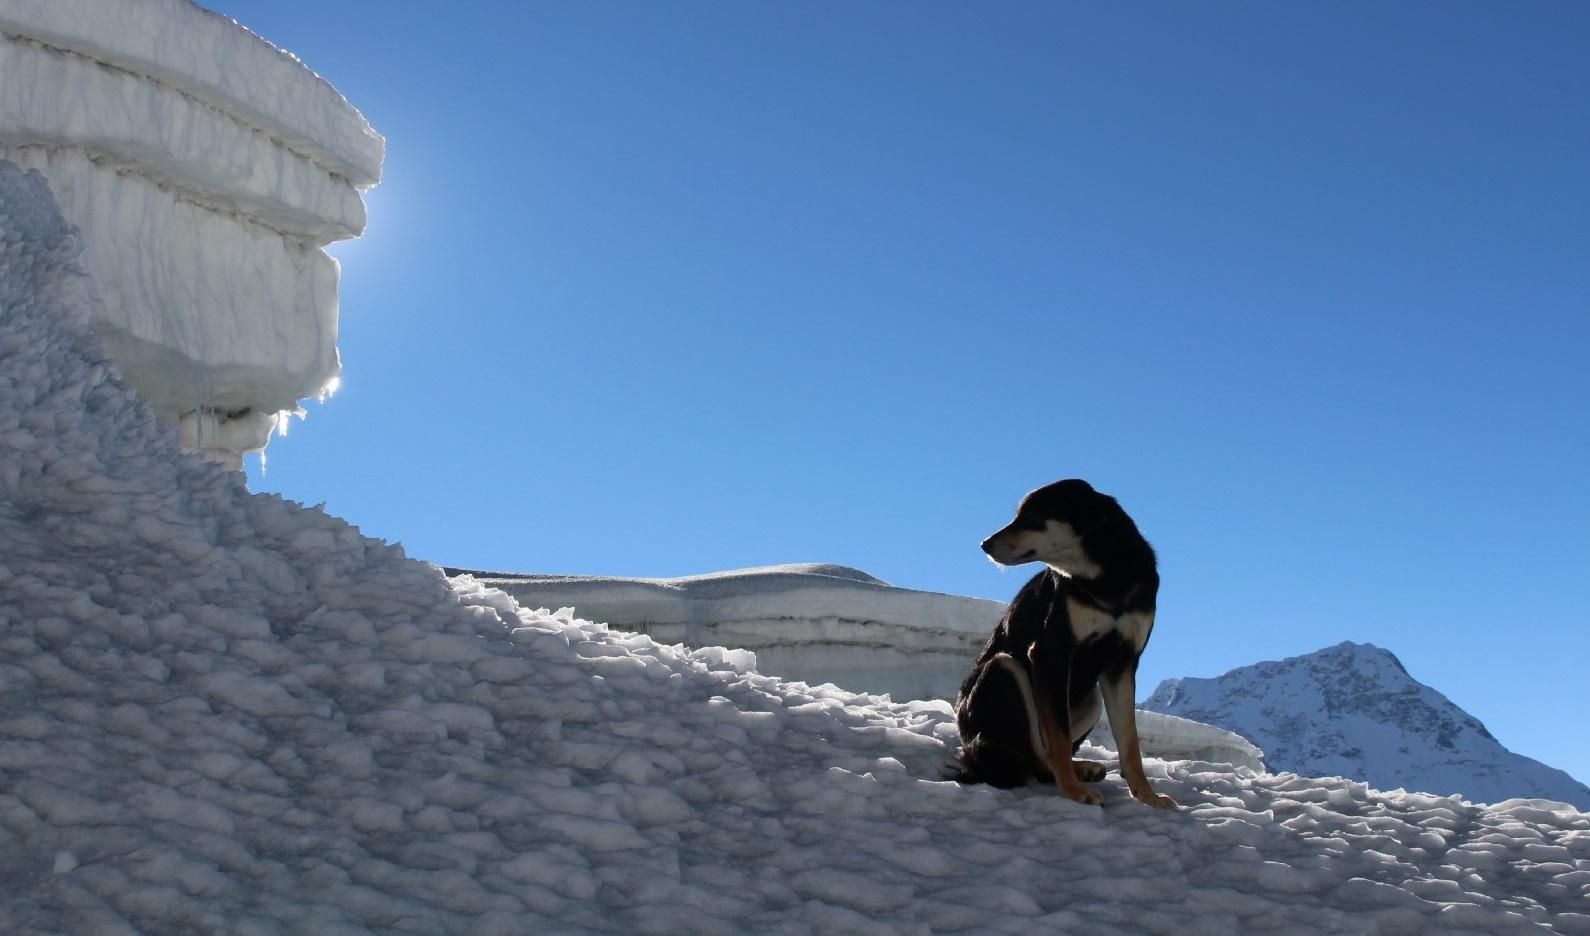  У Непалі бродячий пес приєднався до експедиції і підкорив вершину у понад 7 тисяч метрів: фото